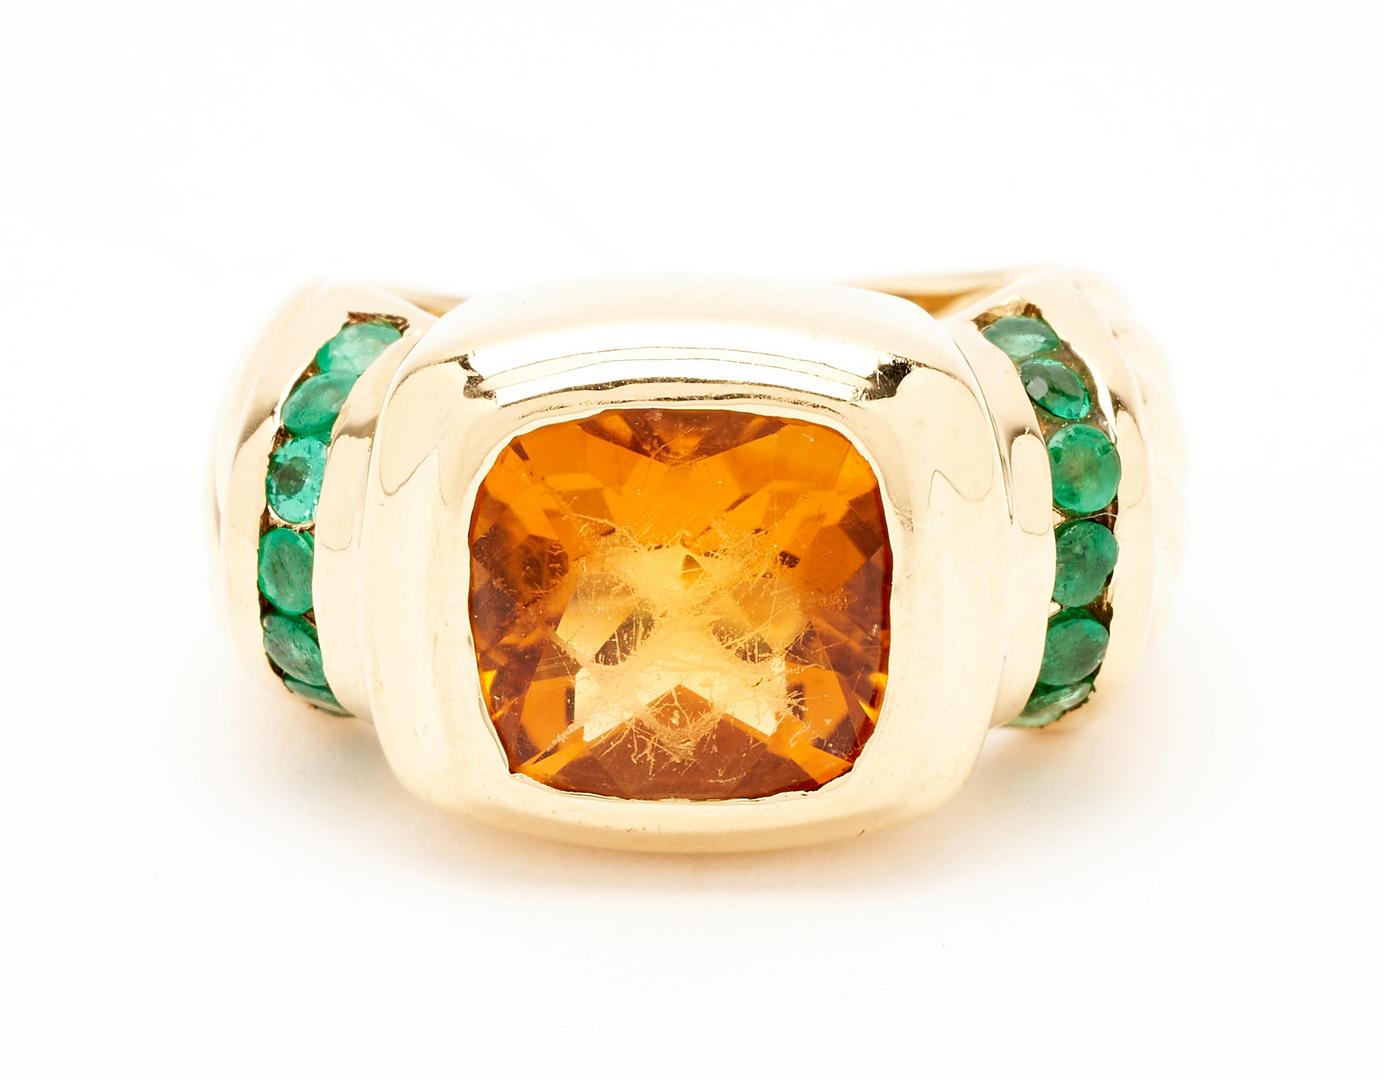 Lot 1118: 18K David Yurman Citrine & Emerald Ring